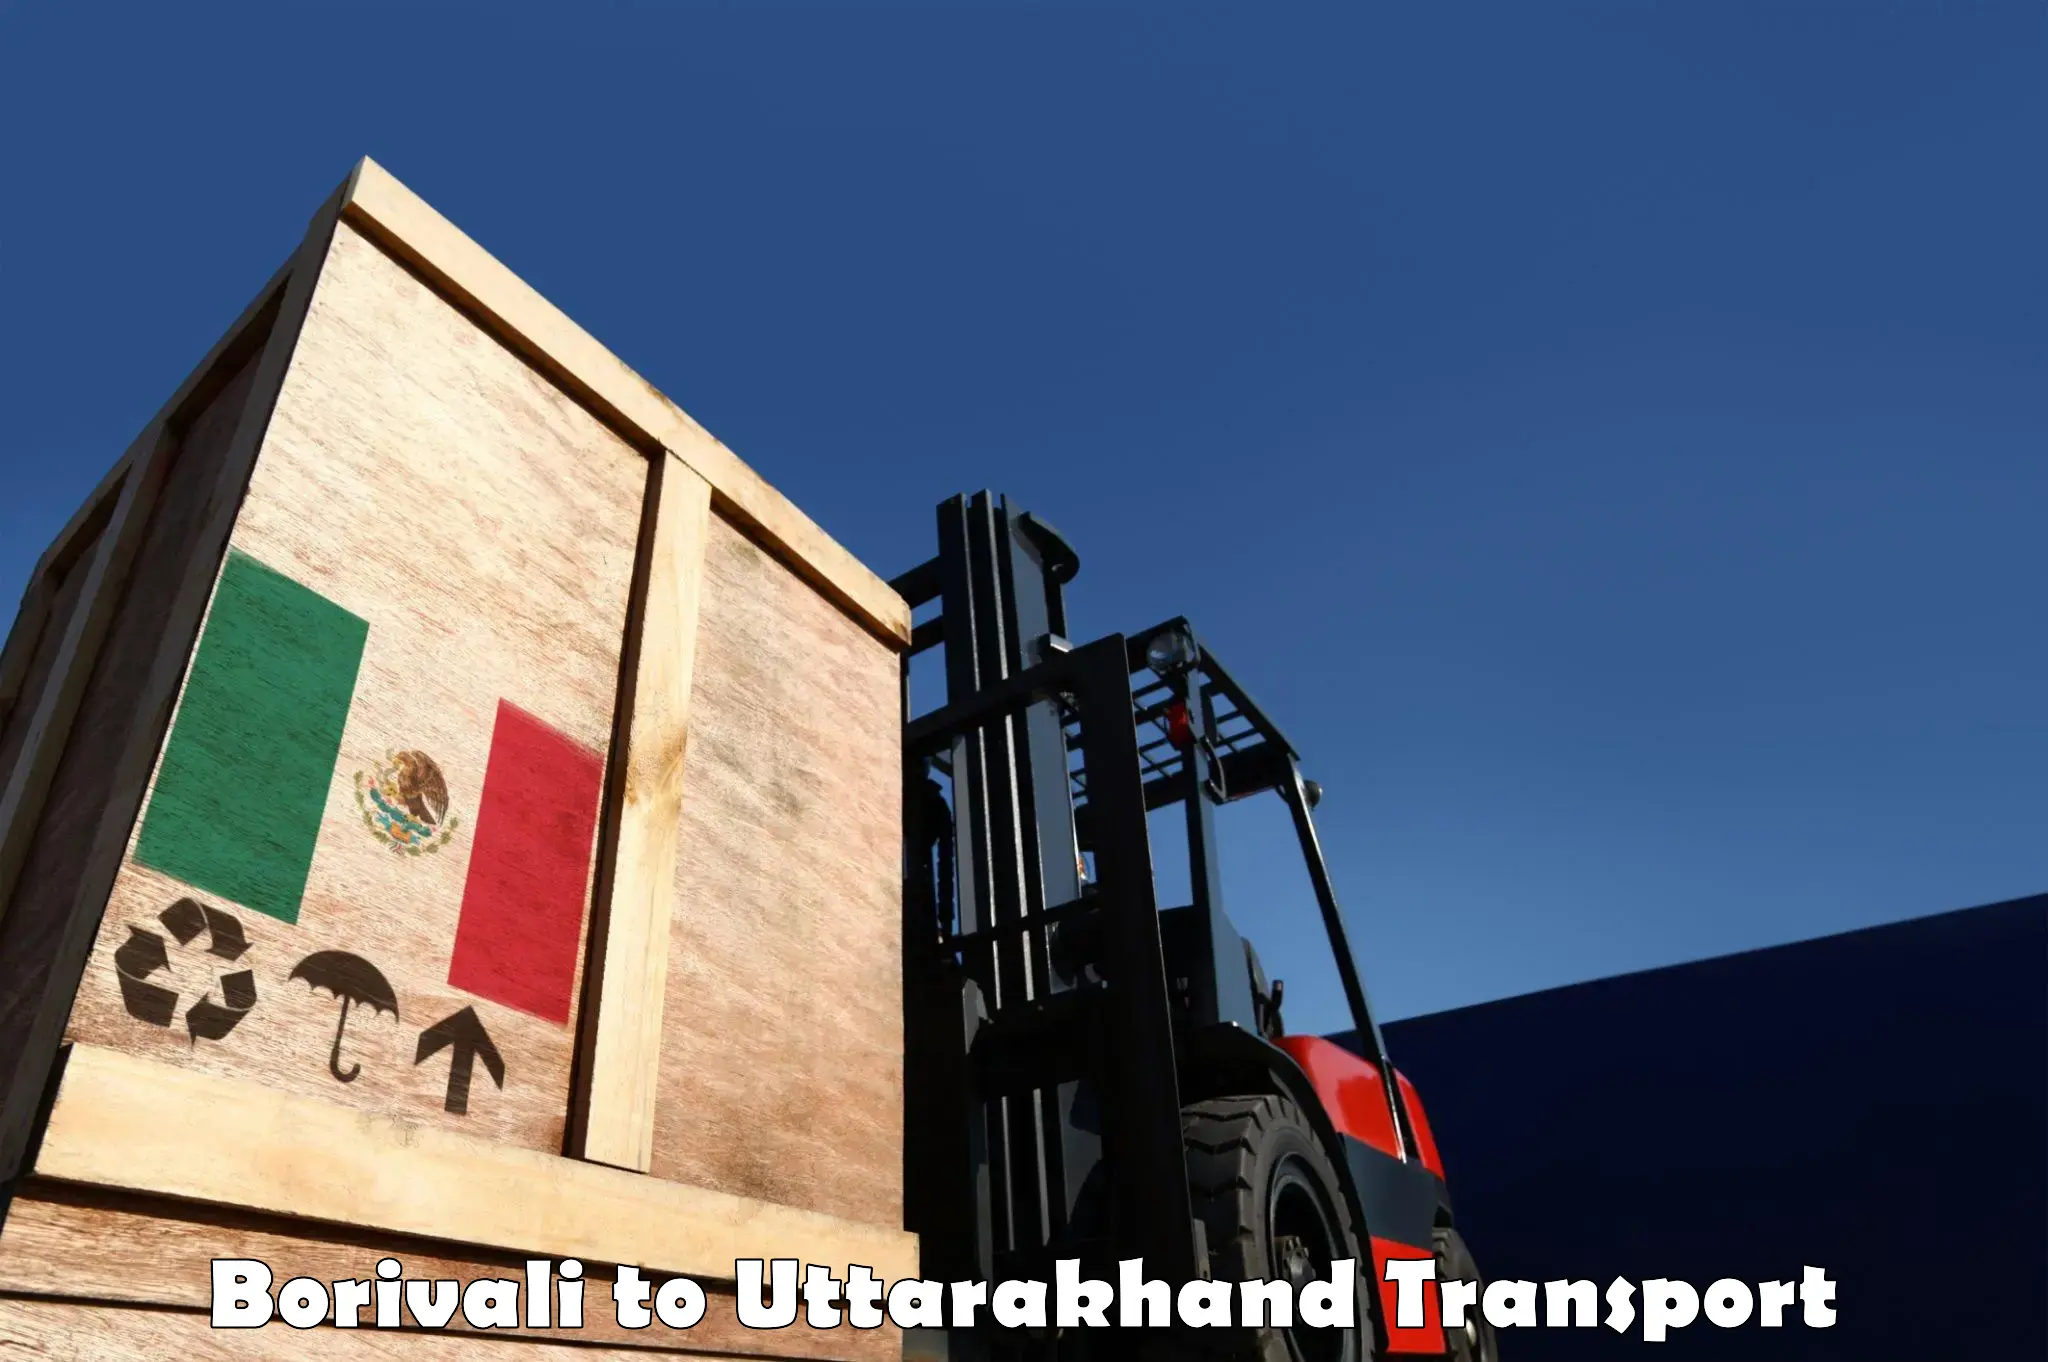 Commercial transport service Borivali to Uttarakhand